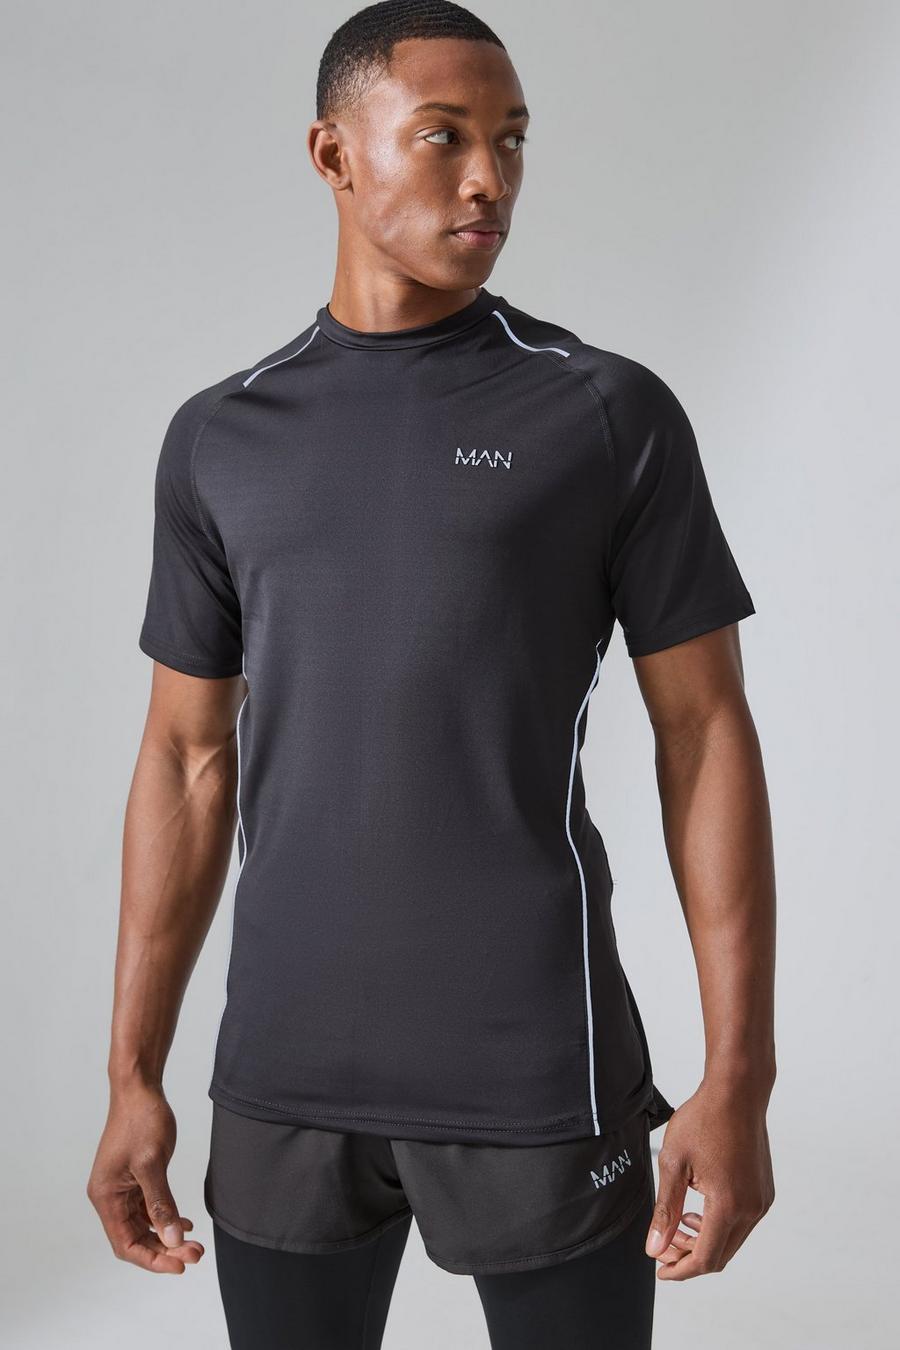 Camiseta MAN Active de correr ajustada al músculo, Black